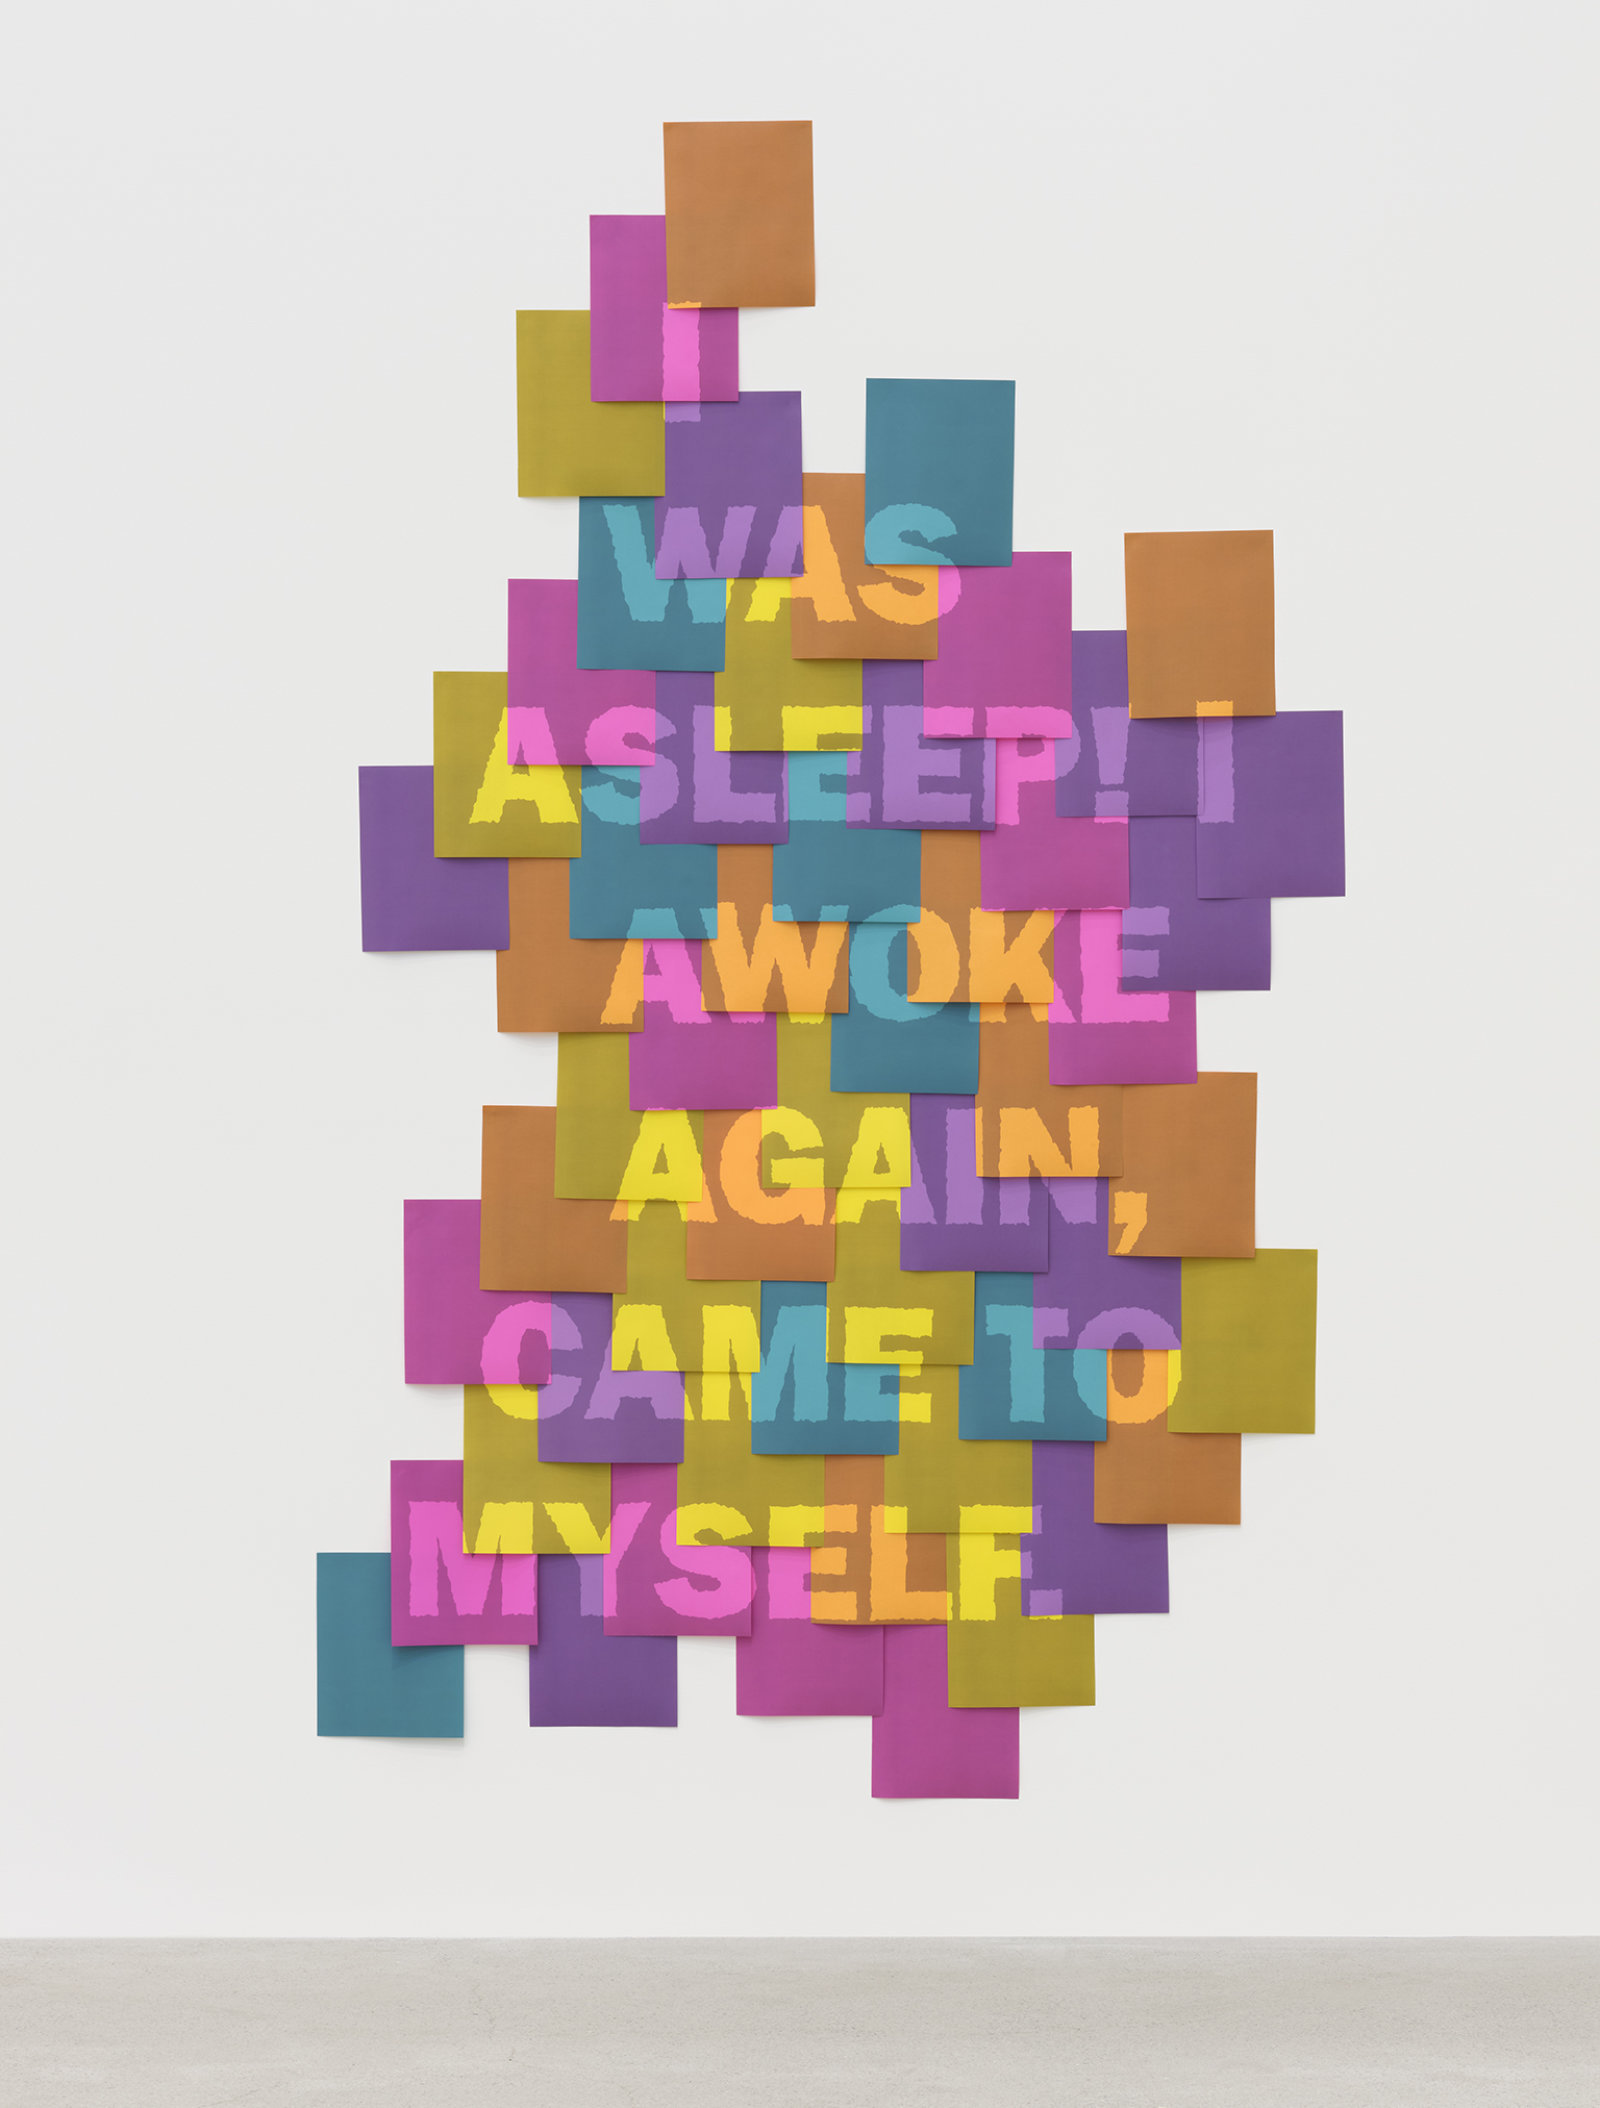 Raymond Boisjoly, As It Comes (was asleep), 2013, inkjet prints, 90 x 70 in. (229 x 178 cm)